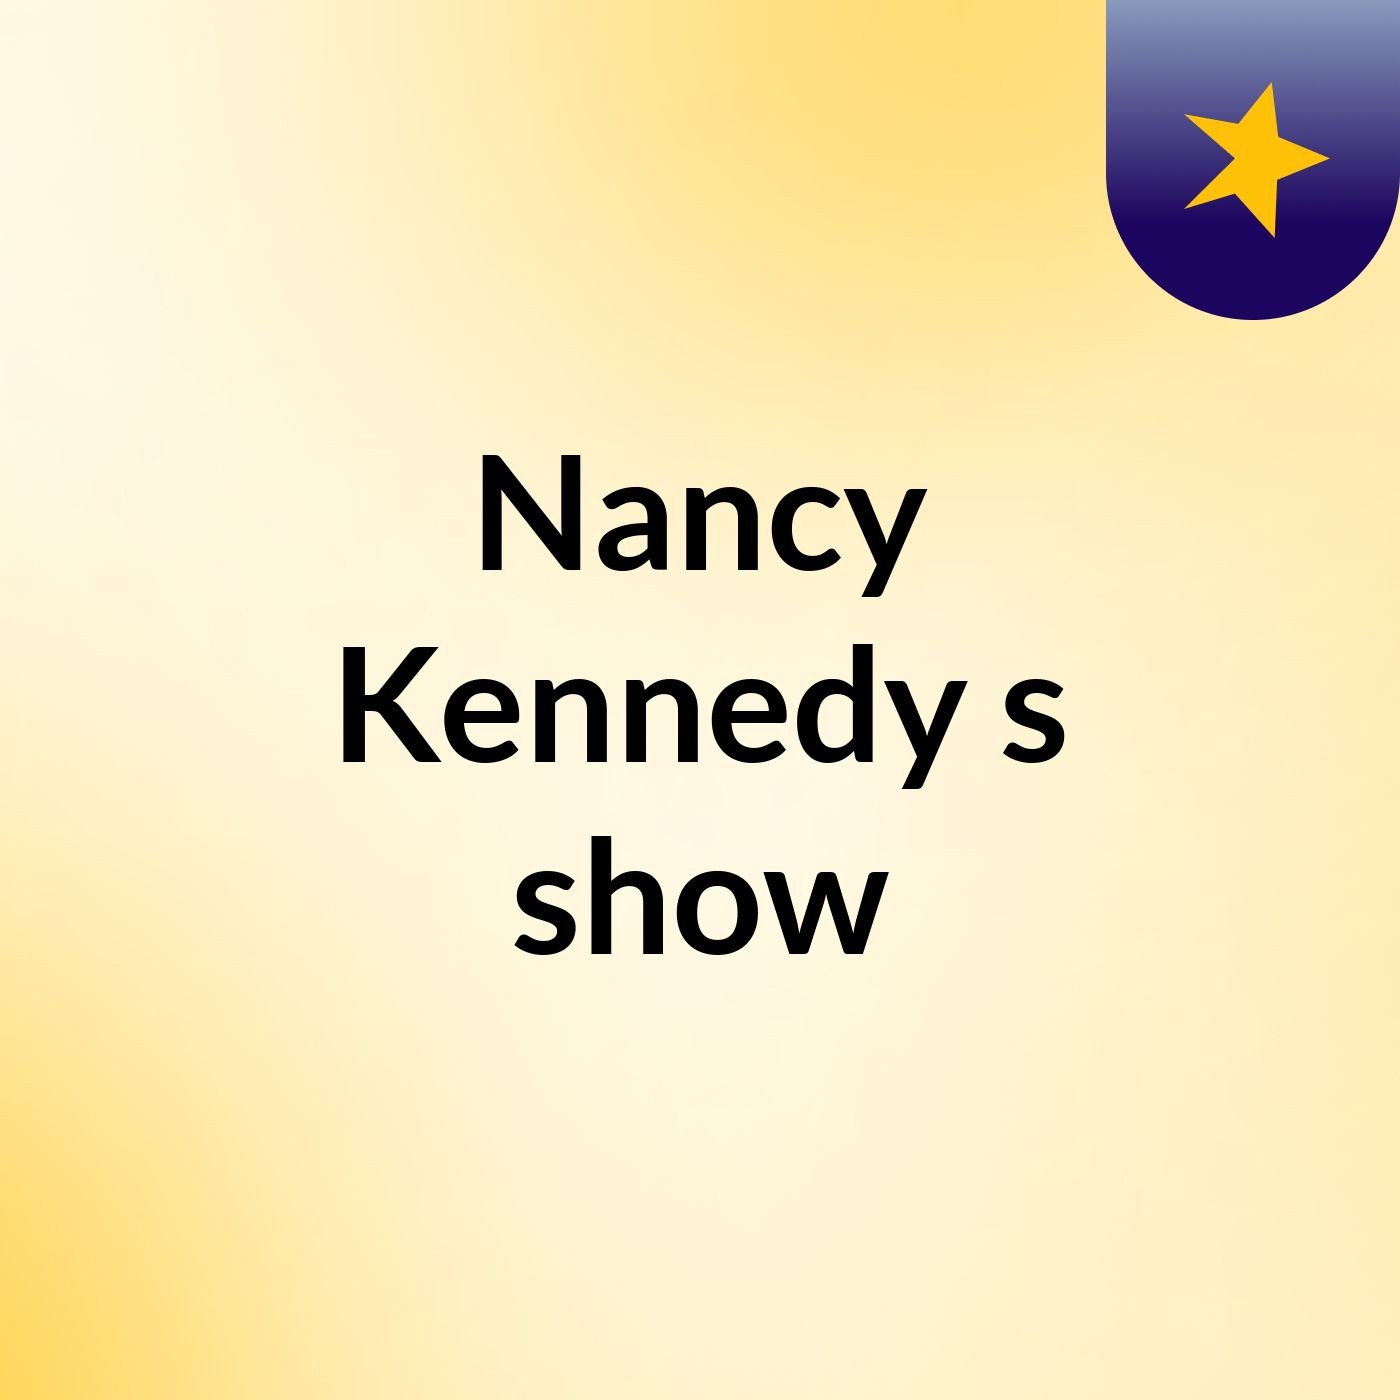 Nancy Kennedy's show